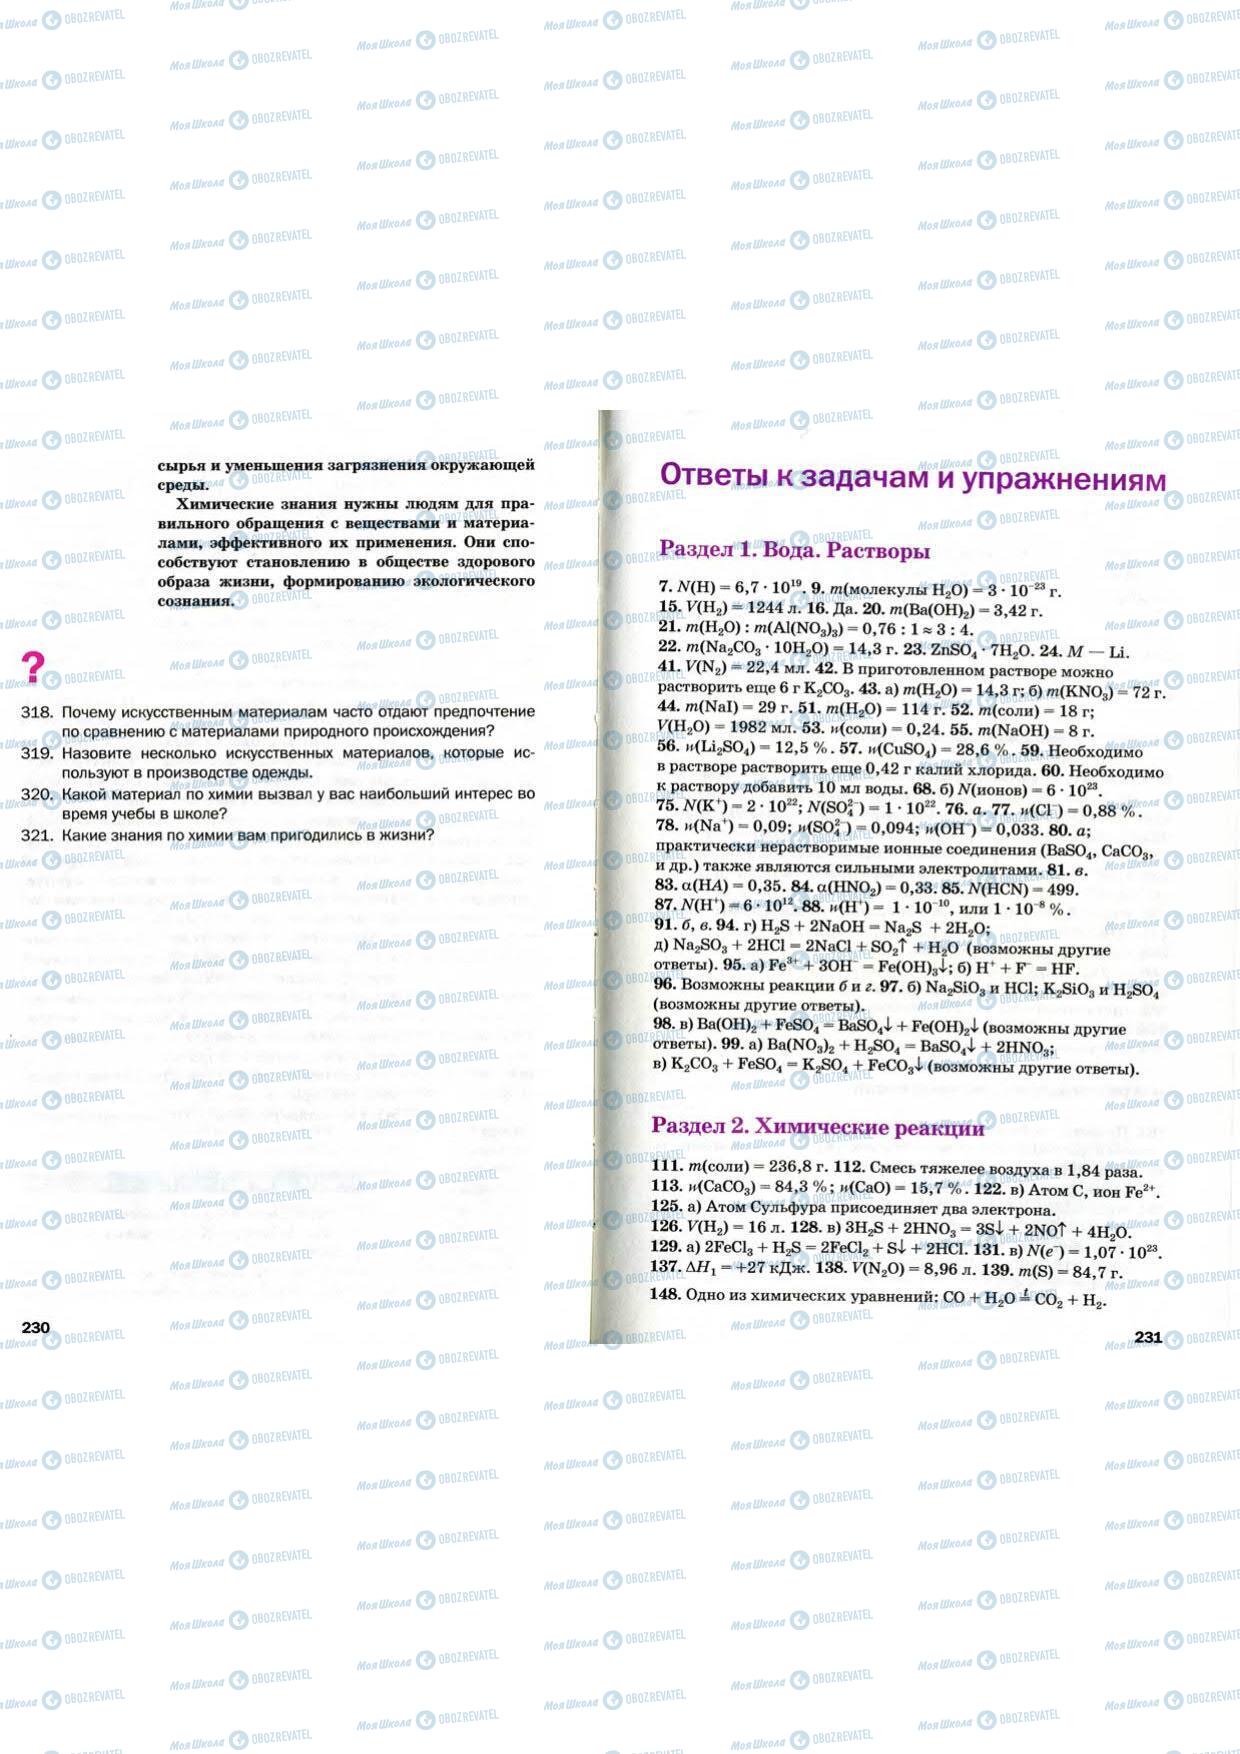 Підручники Хімія 9 клас сторінка 230-231